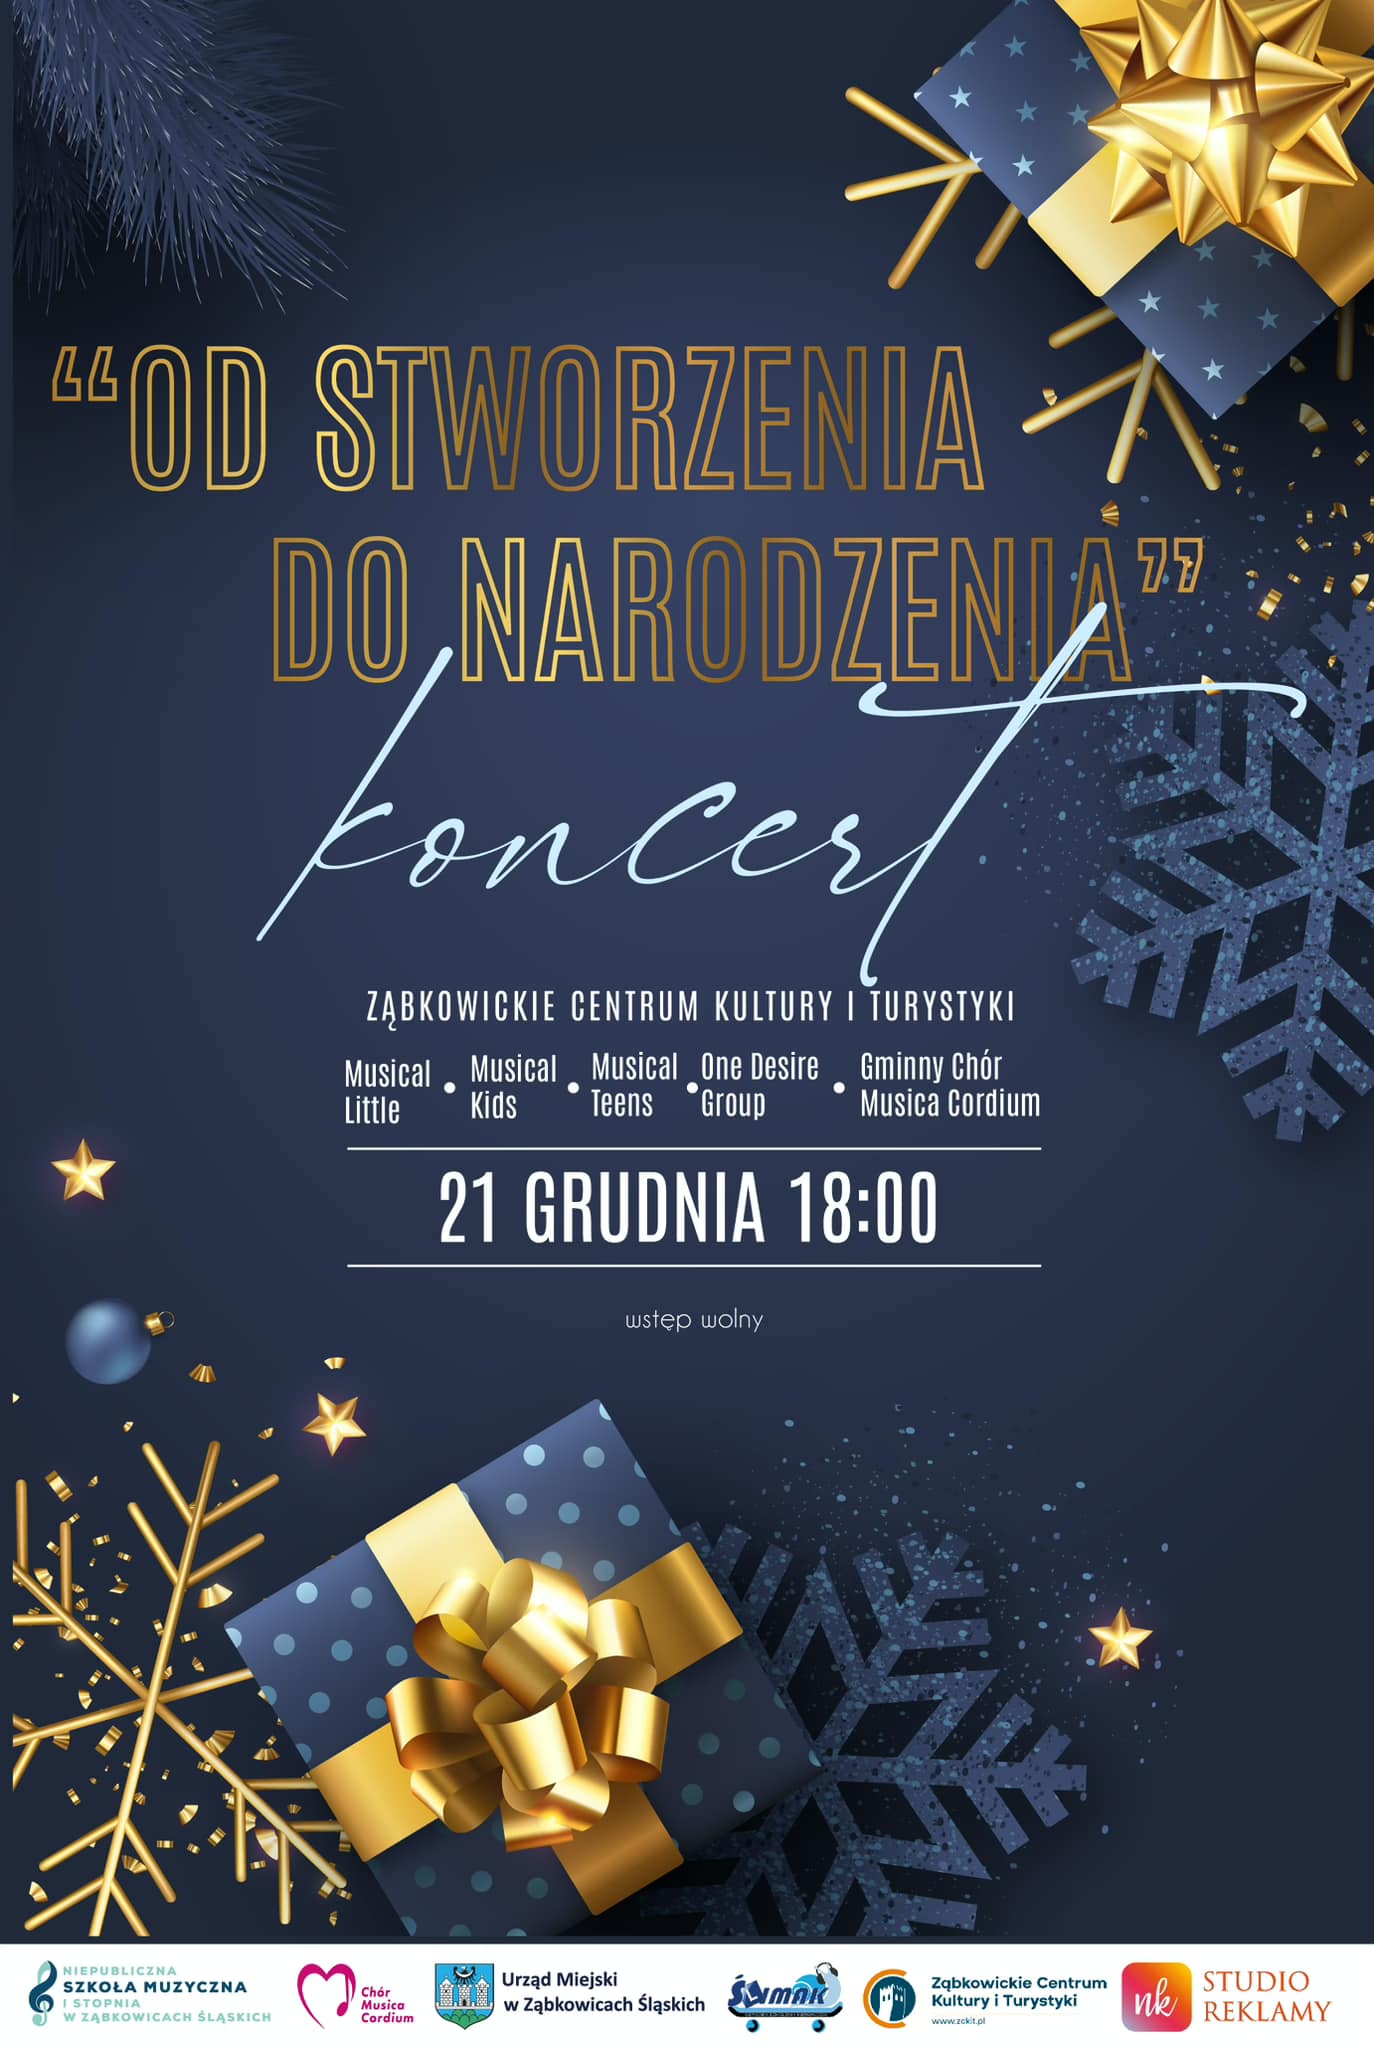 Plakat informujący o koncercie "Od stworzenia do narodzenia" w Ząbkowickim Centrum Kultury i Turystyki 21 grudnia o godzinie 18:00. Na tle znajdują się granatowo-złote prezenty oraz śnieżynki.